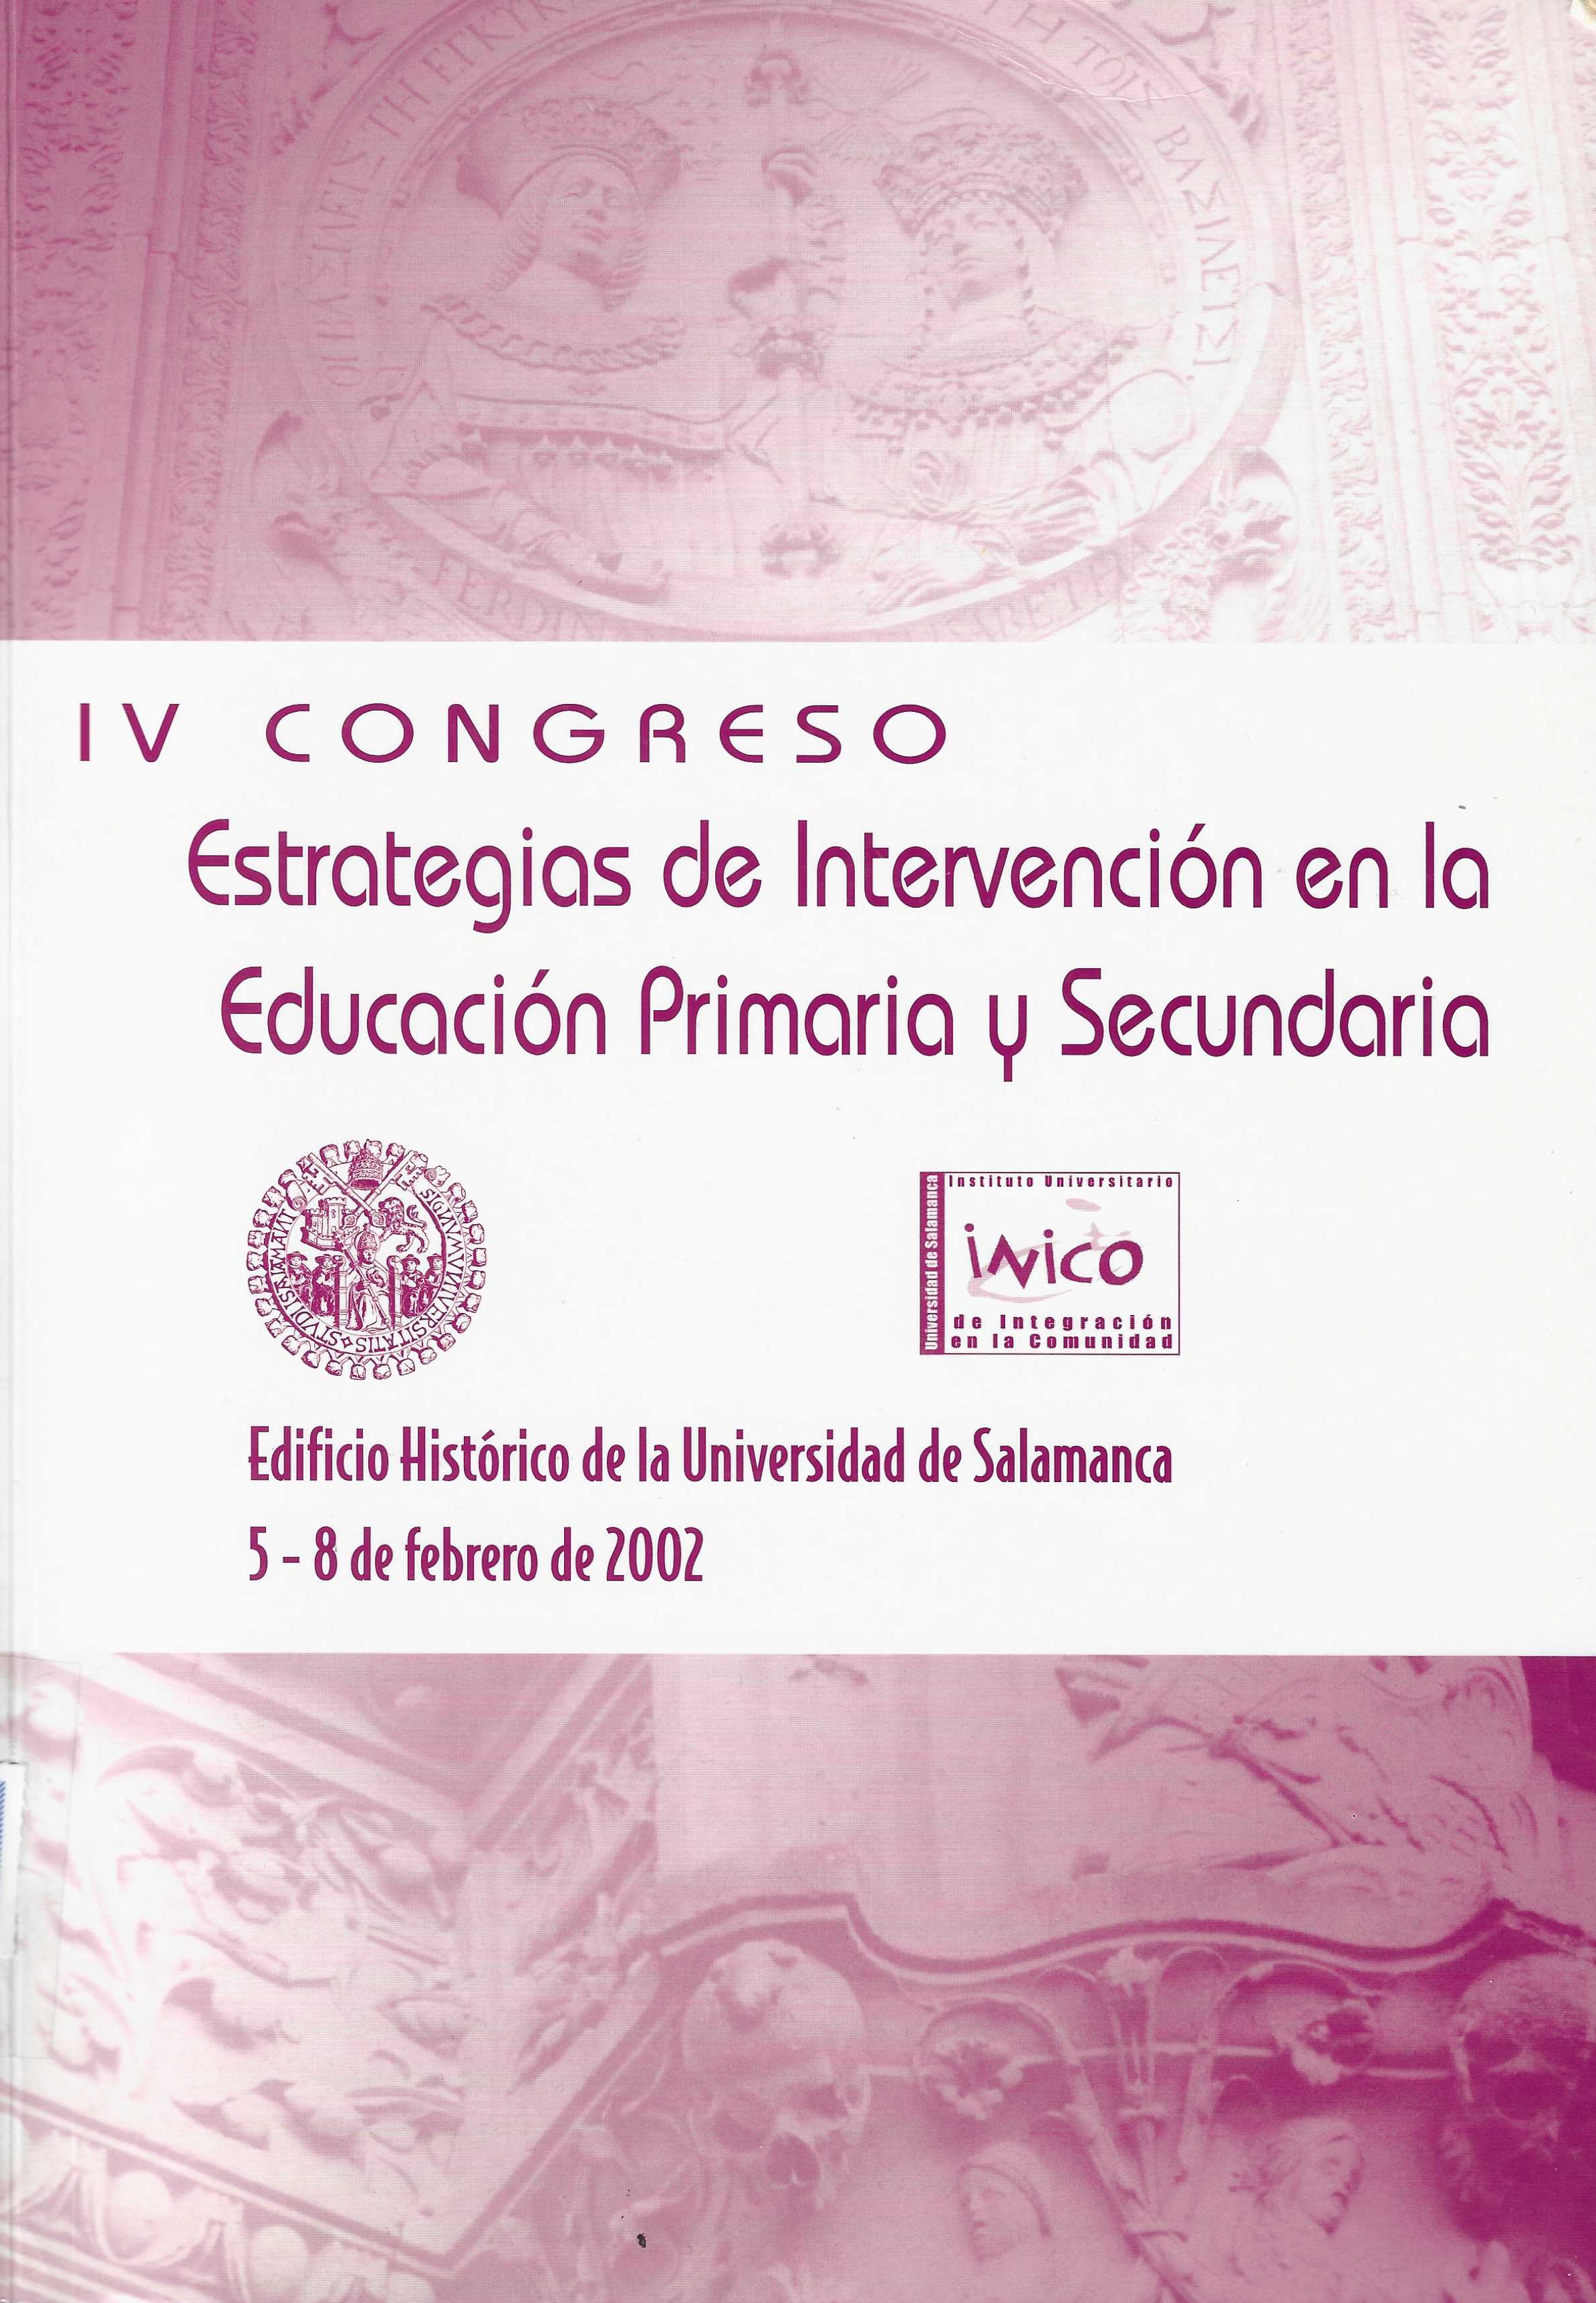 Imagen de portada del libro IV Congreso "Estrategias de intervención en la Educación Primaria y Secundaria"